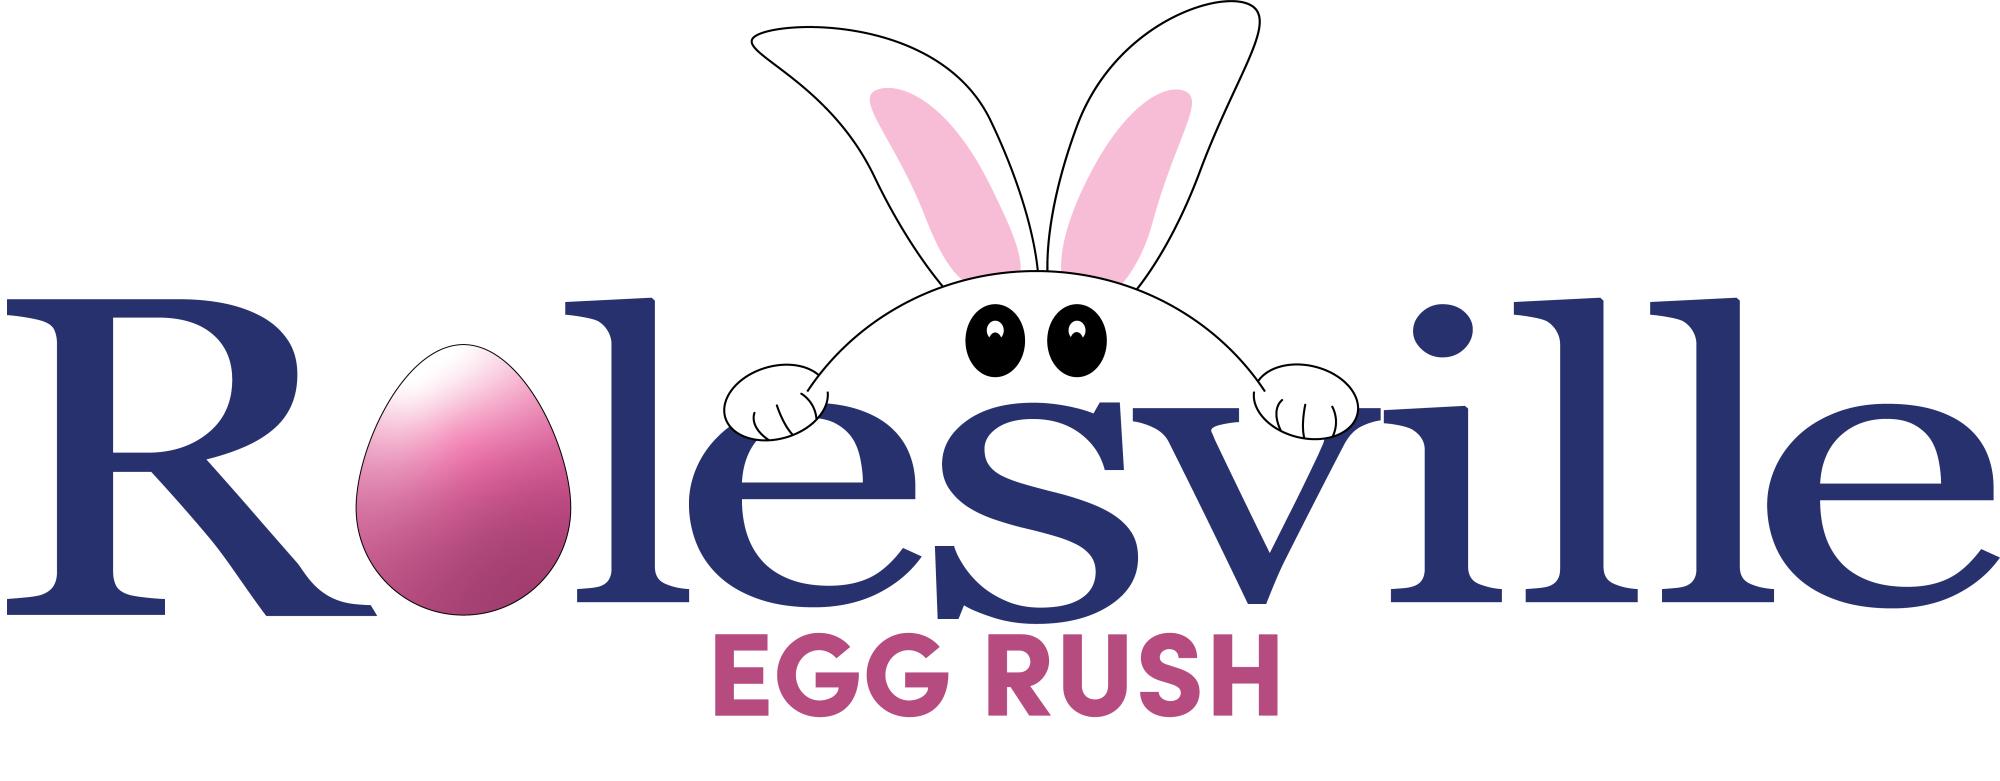 Rolesville Egg Rush